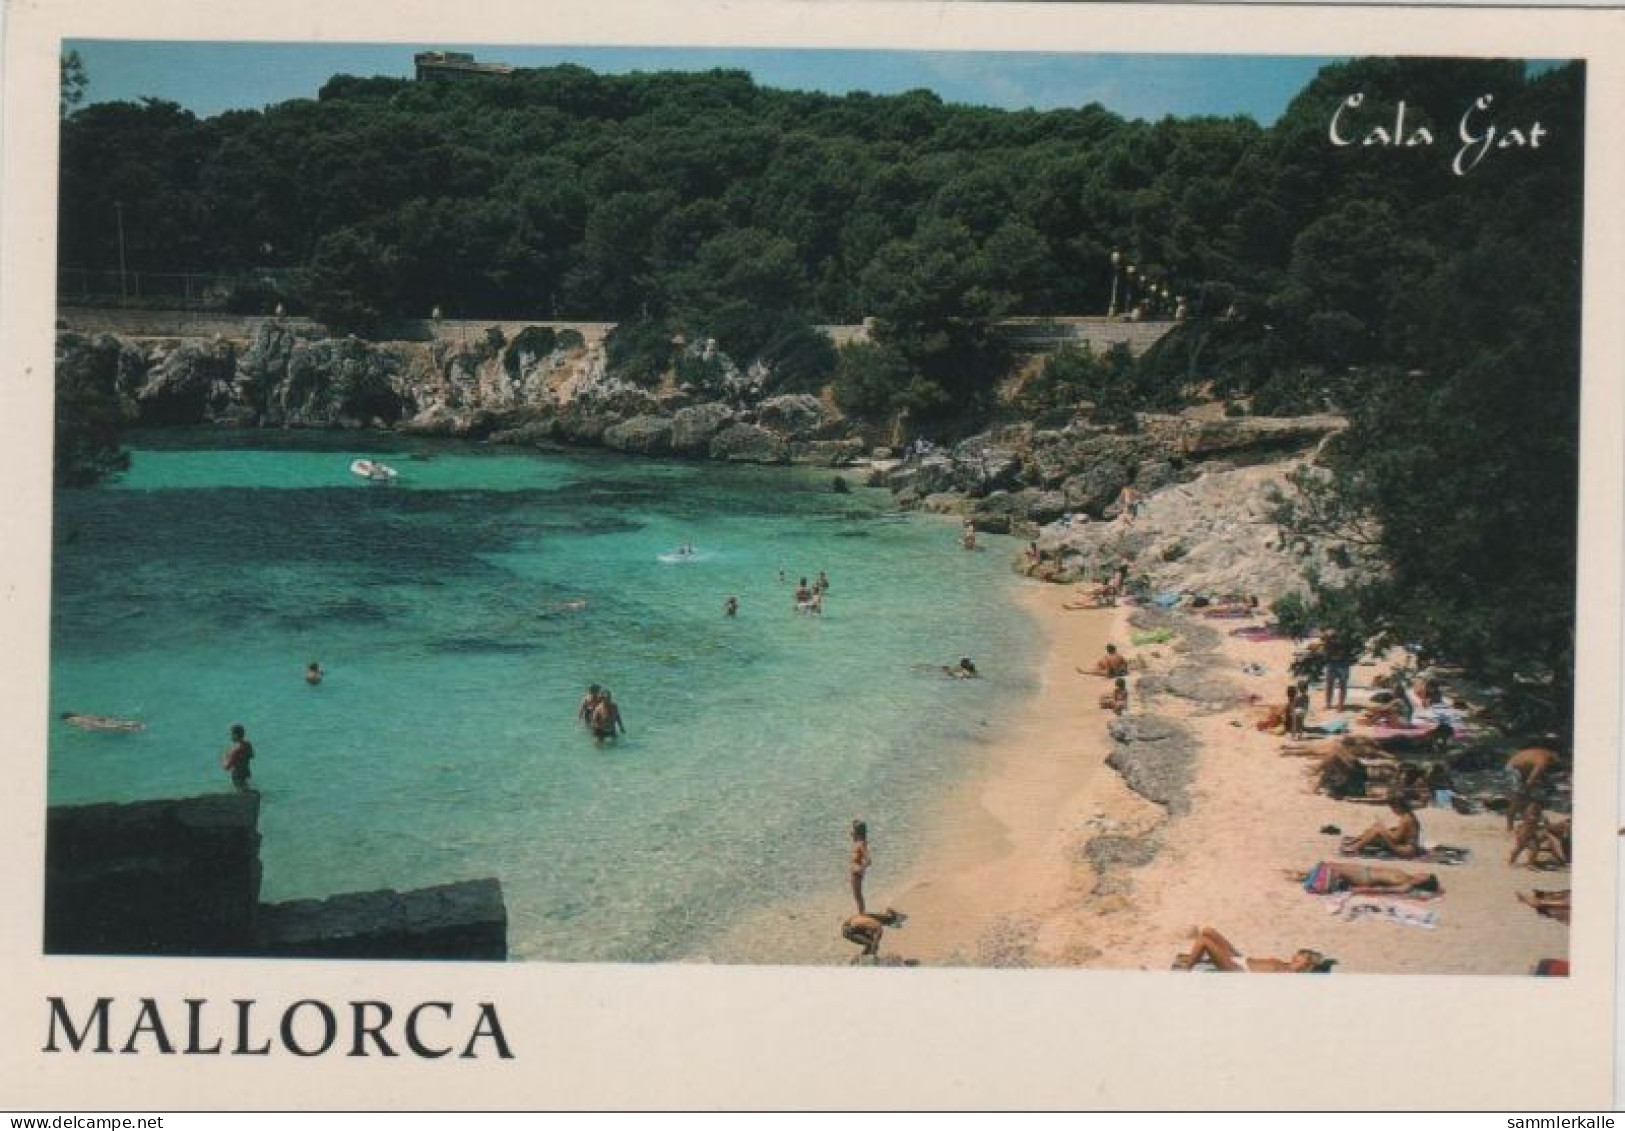 9001108 - Cala Gat - Cala Rajada - Spanien - Strand - Mallorca